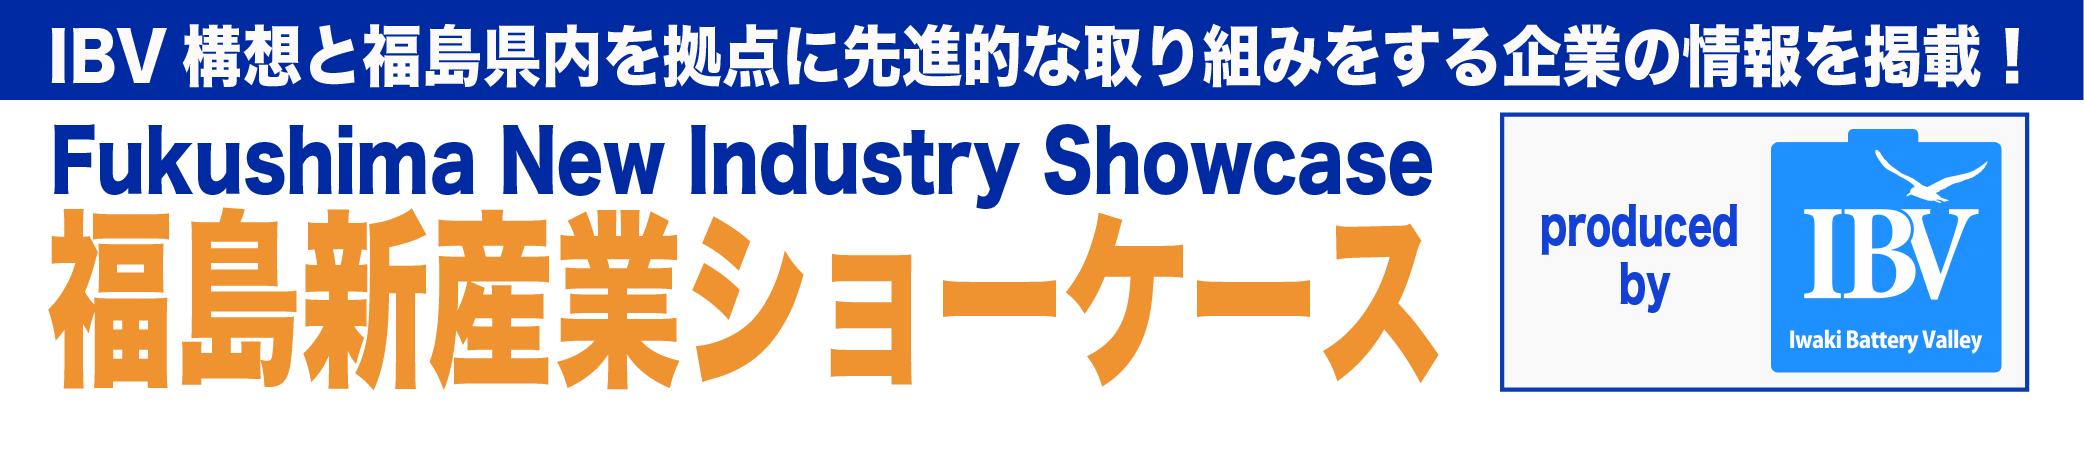 福島新産業ショーケース produced by IBV